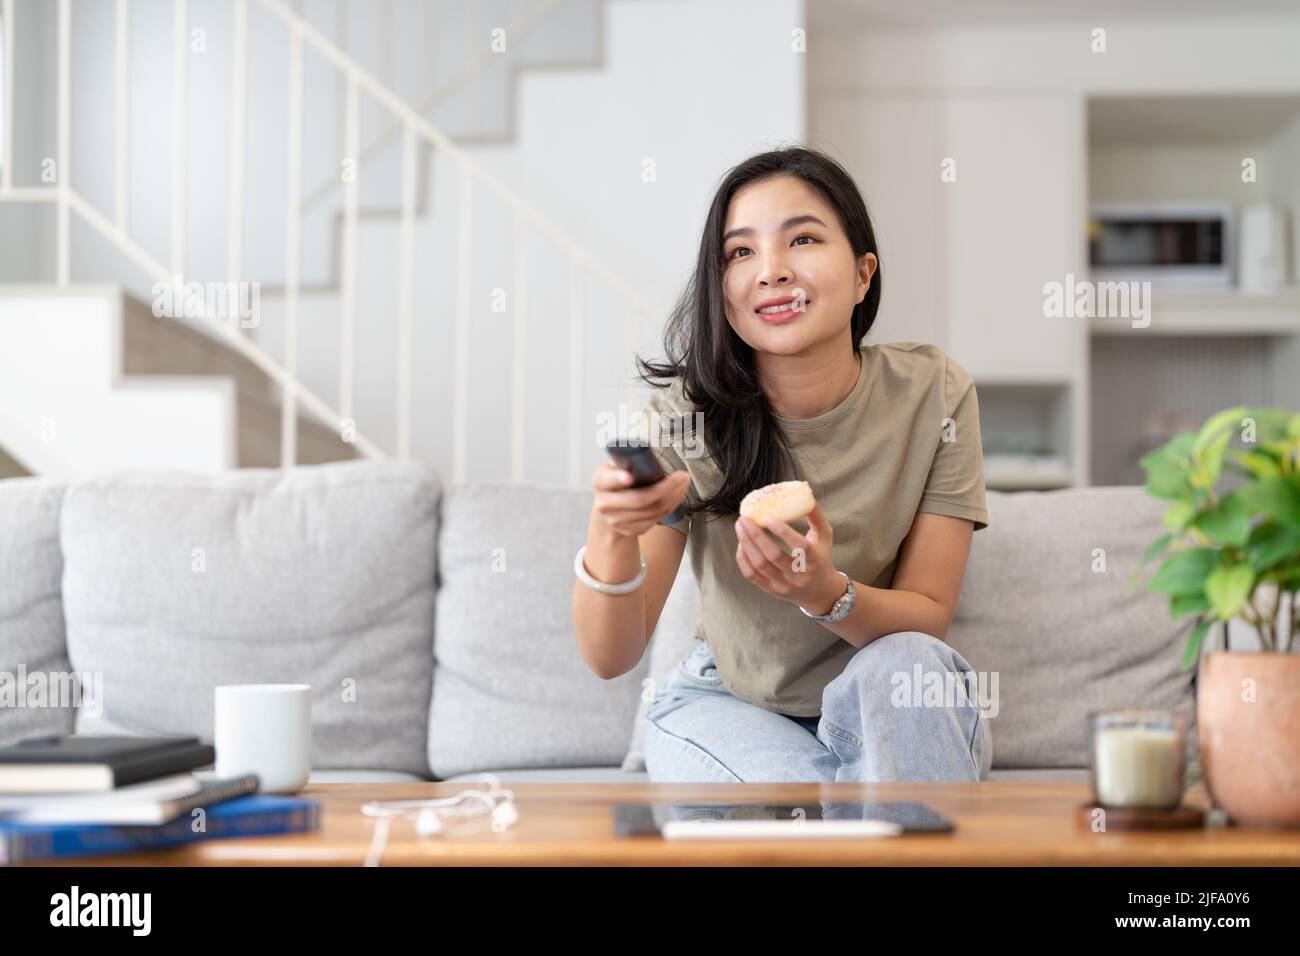 Immagine di una bella donna asiatica canale di ricerca con telecomando per guardare la tv mentre si siede sul divano a casa Foto Stock